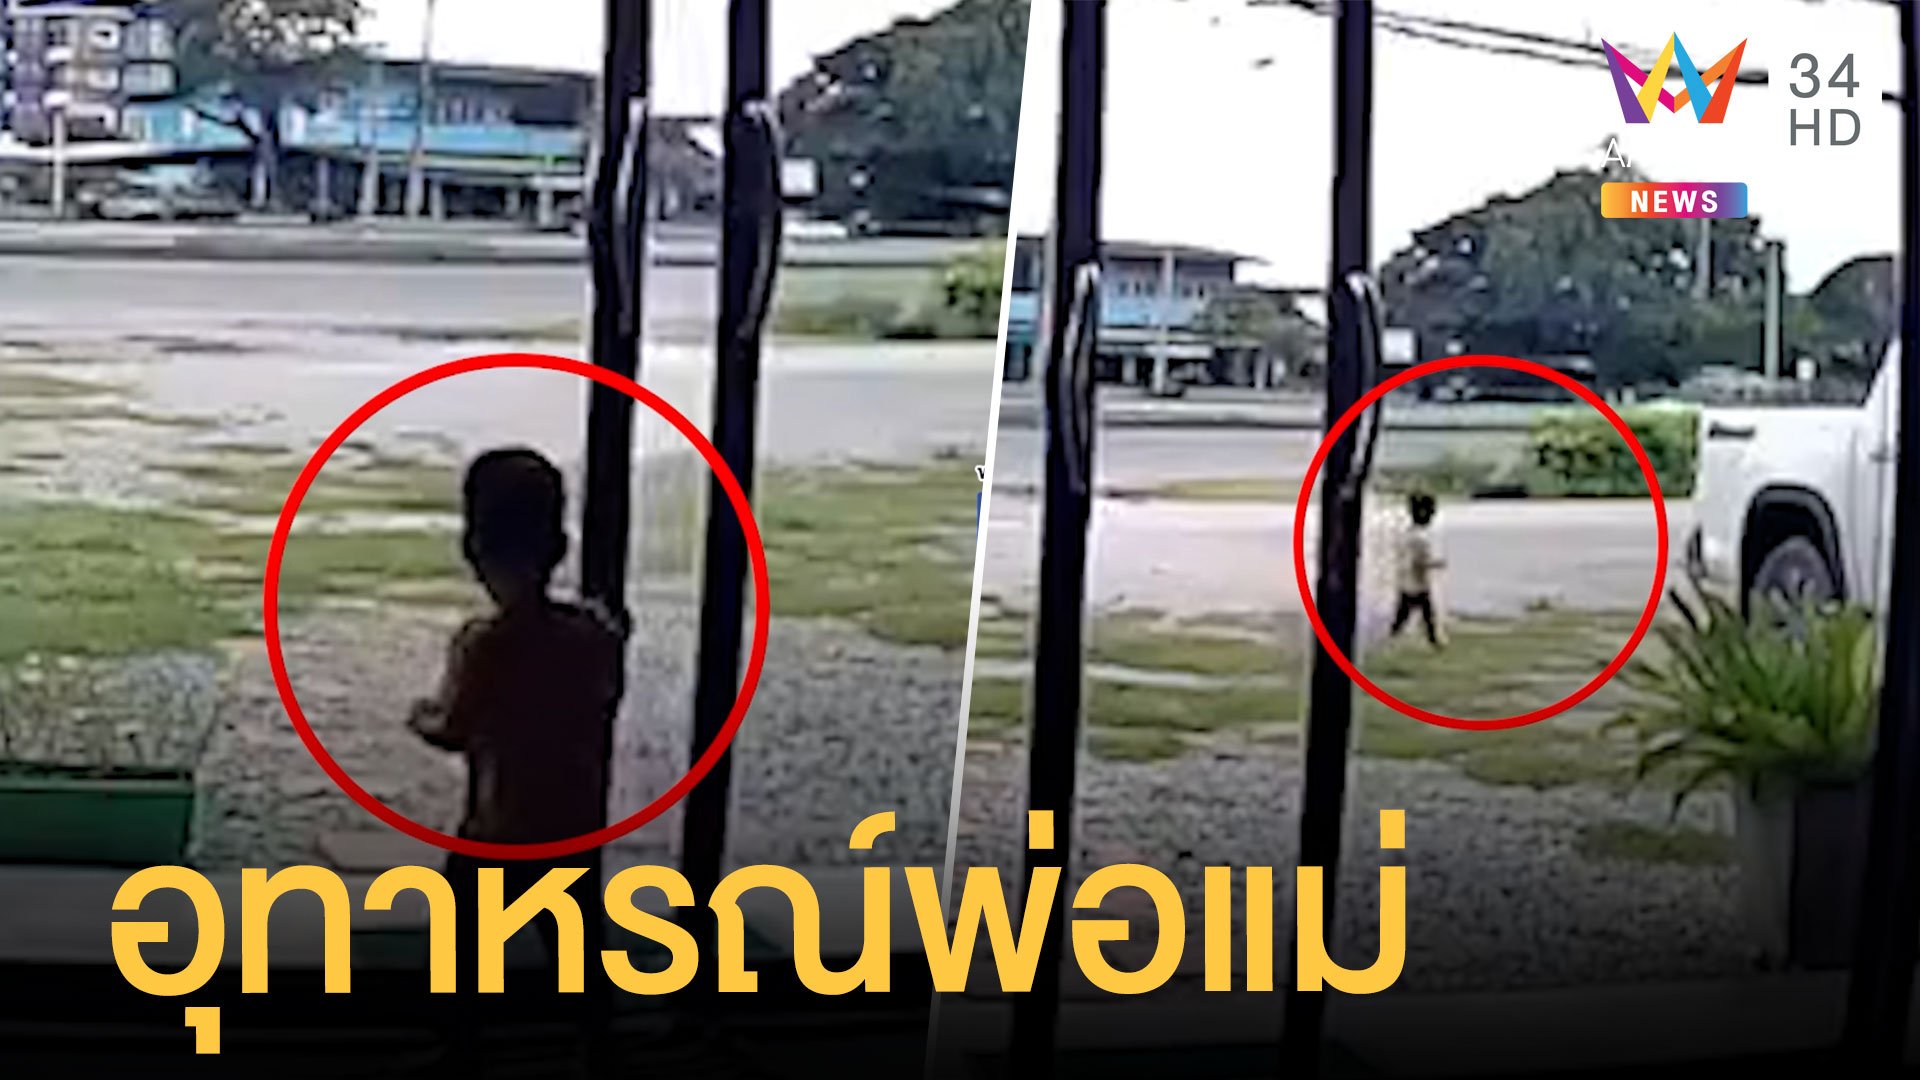 เด็กเปิดประตูเดินออกจากบ้าน โชคดีมีคนช่วย | ข่าวอรุณอมรินทร์ | 28 ก.ย. 64 | AMARIN TVHD34